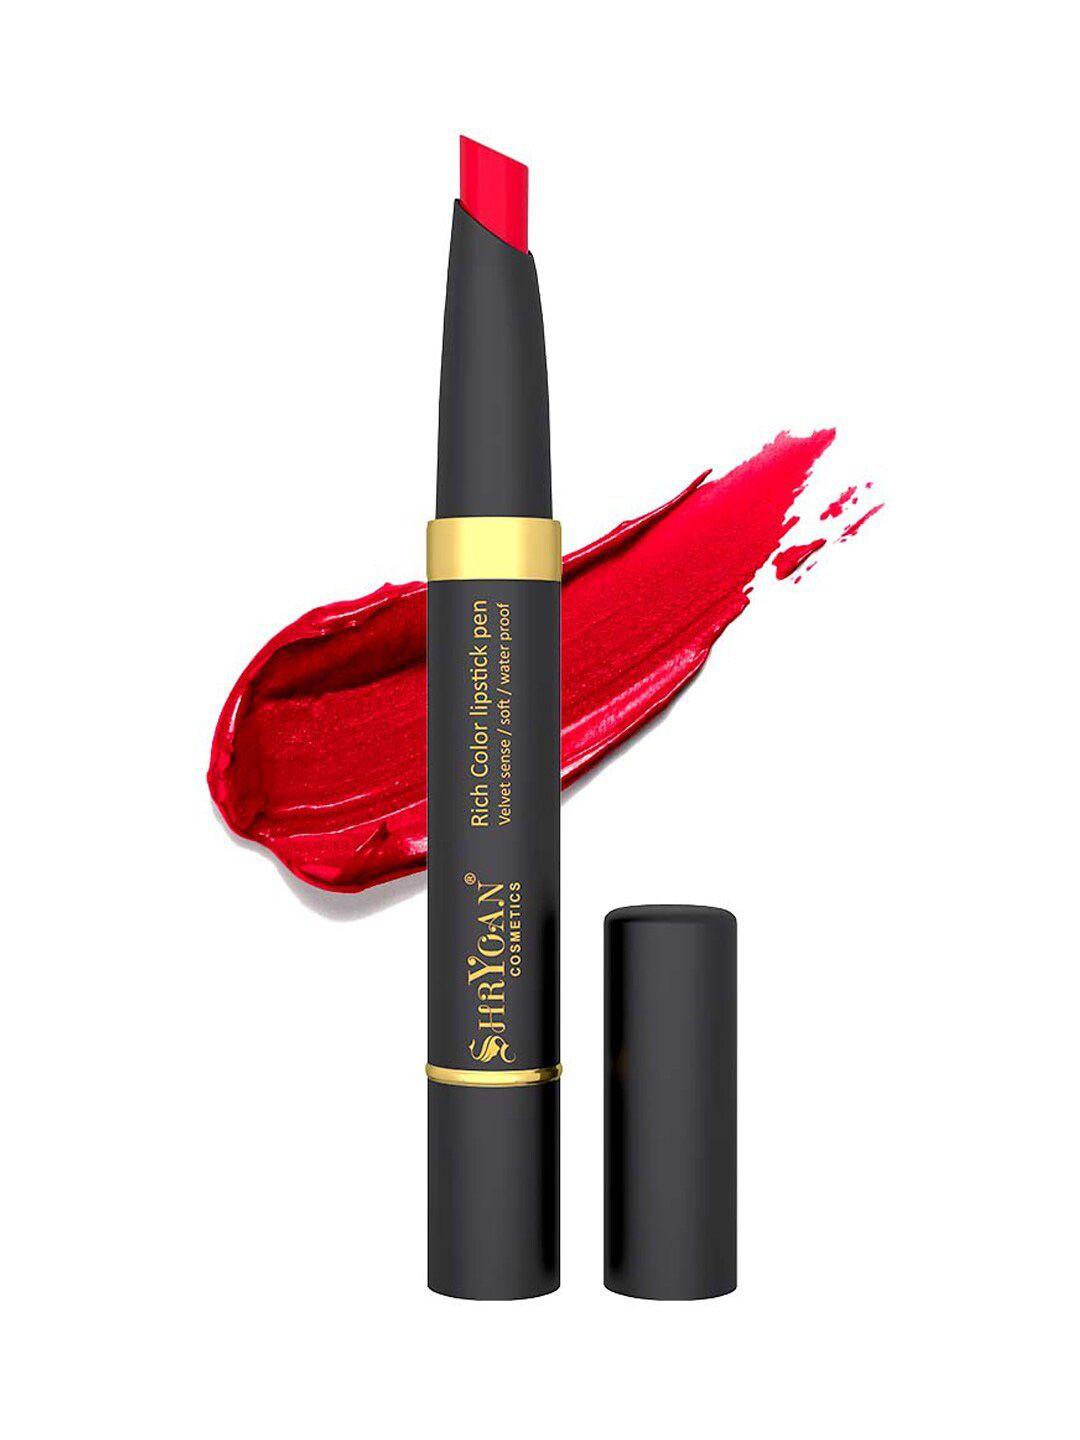 shryoan rich color waterproof lipstick - 2.1g - sh10